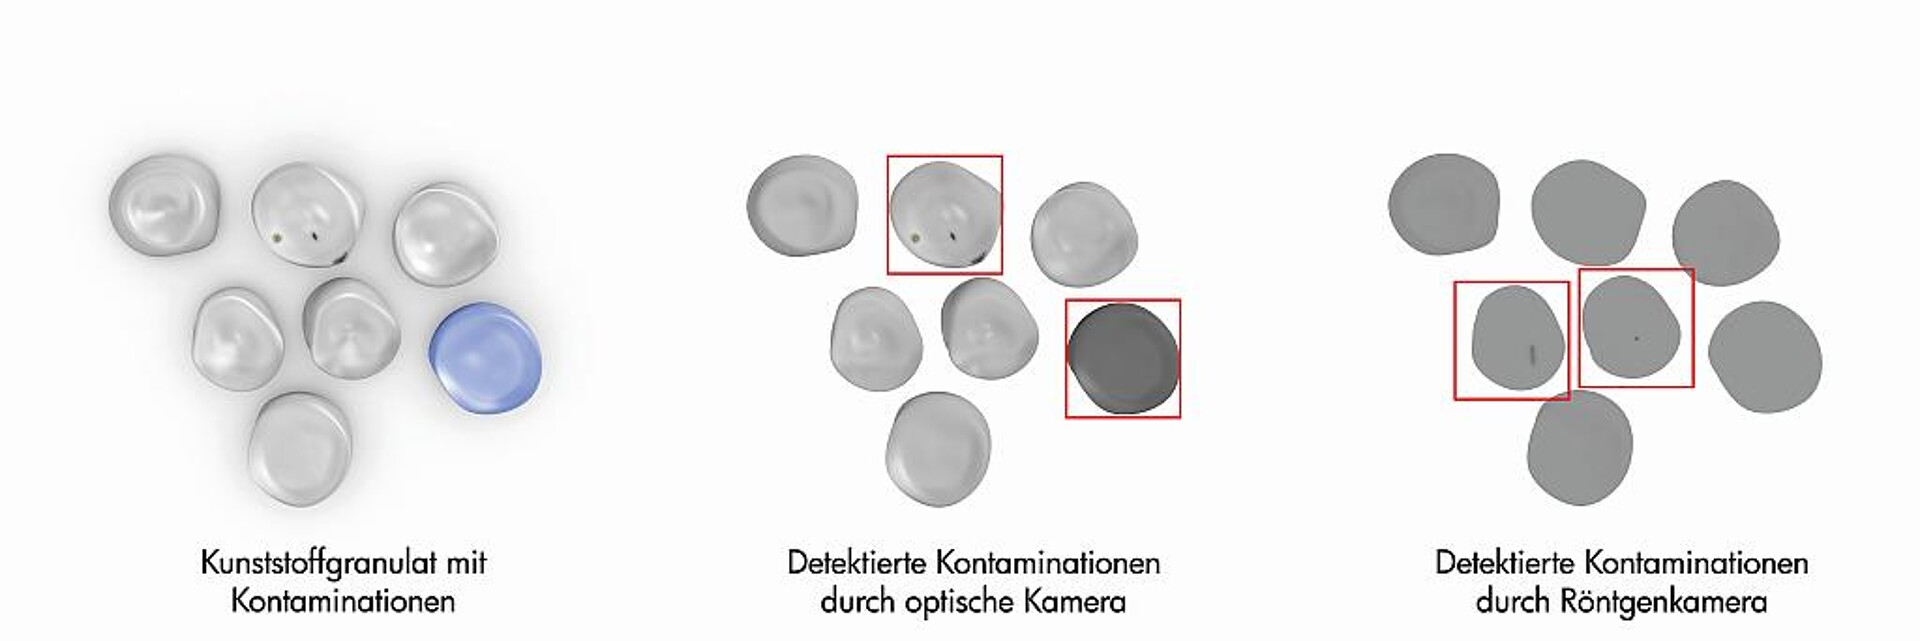 Beispiele für Kunststoffkontaminationen (links): Mit einer optischen Kamera werden Kontaminationen auf dem Granulat sowie Farbabweichungen detektiert (Mitte). Mit einer Röntgenkamera werden metallische Kontaminationen im Granulatinneren detektiert (rechts). (Fotos: Sikora)